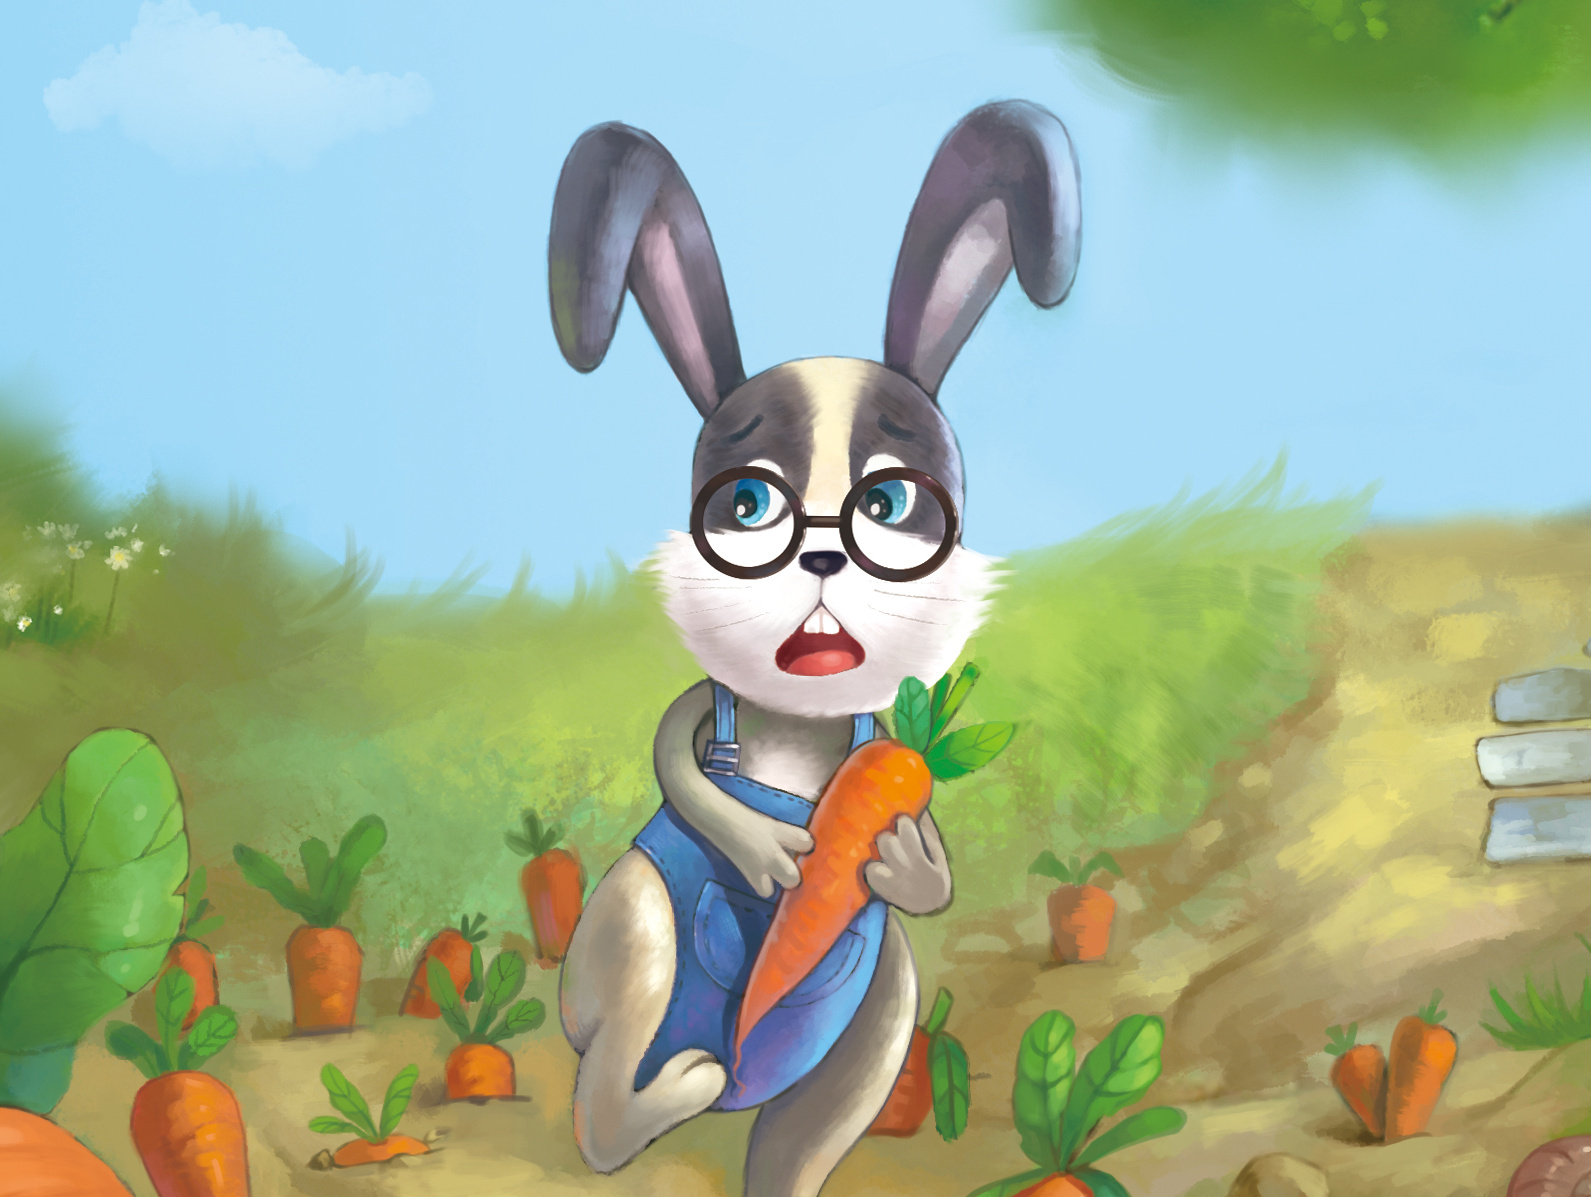 手繪卡通兔子可愛胡蘿蔔動態gif元素, 手繪, 卡通, 可愛素材圖案，PSD和PNG圖片免費下載